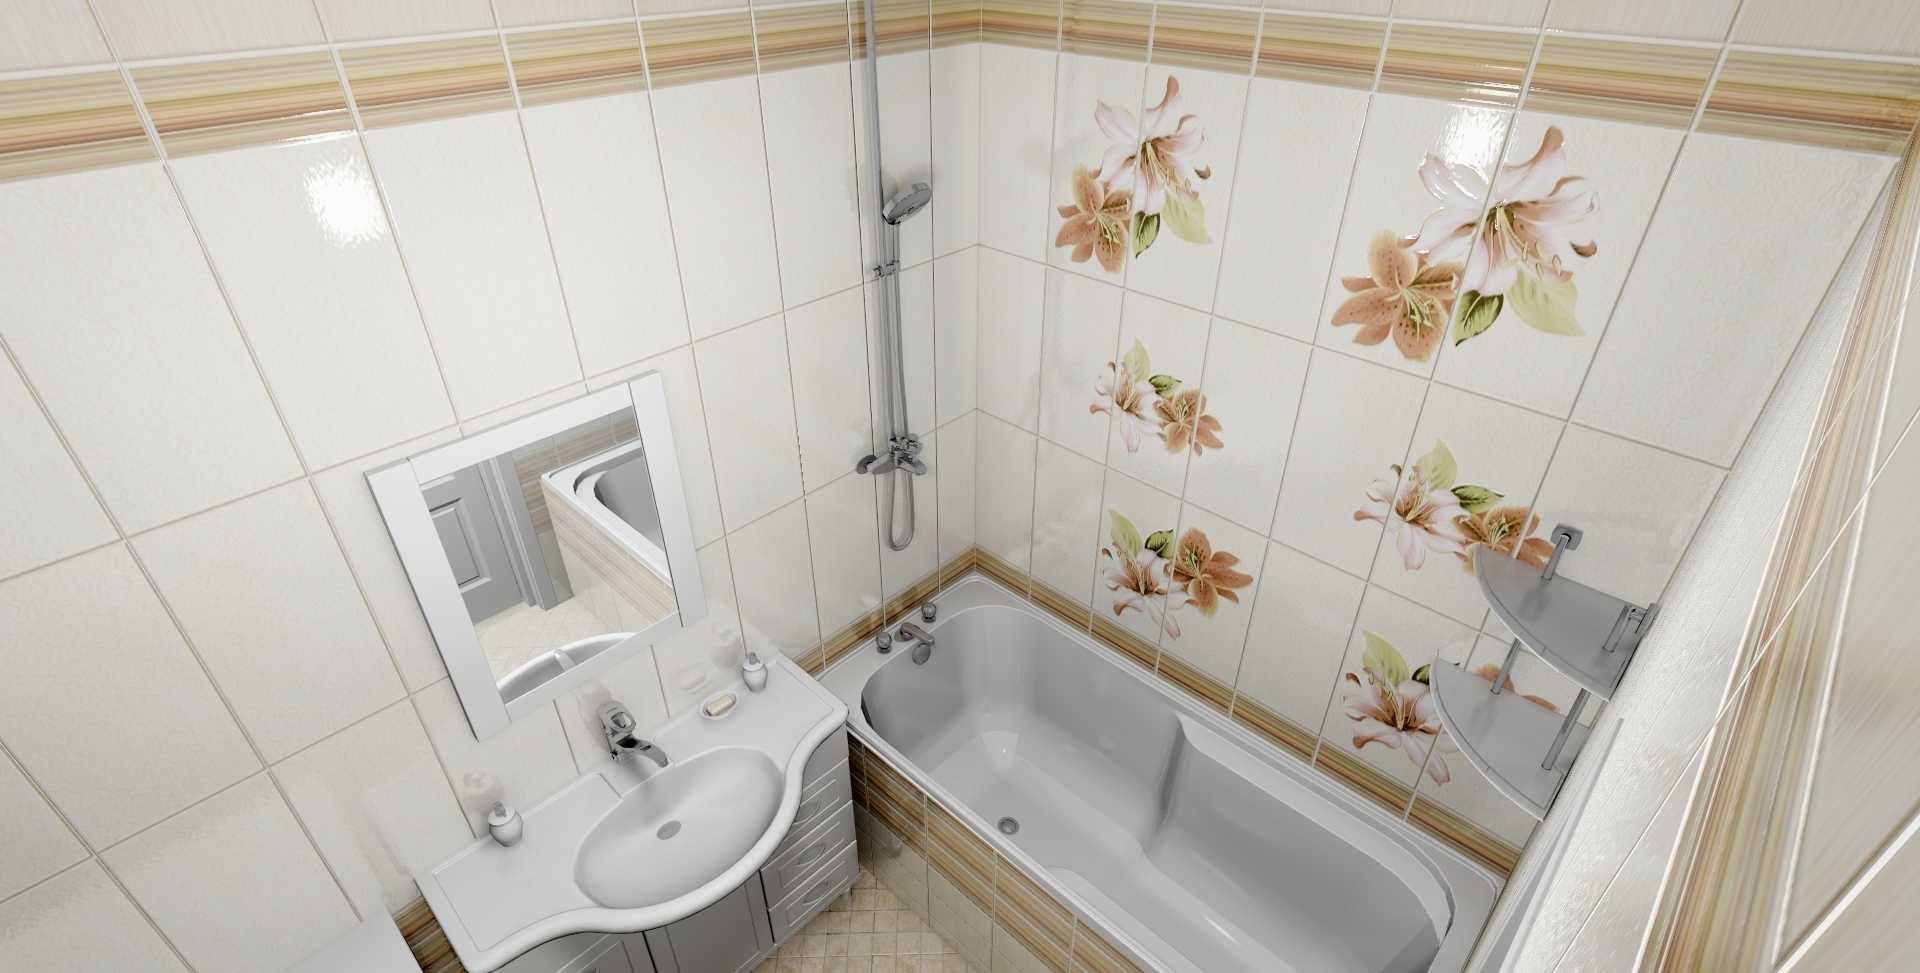 Как подготовить ванную комнату к ремонту и как обшить ее пластиковыми панелями?